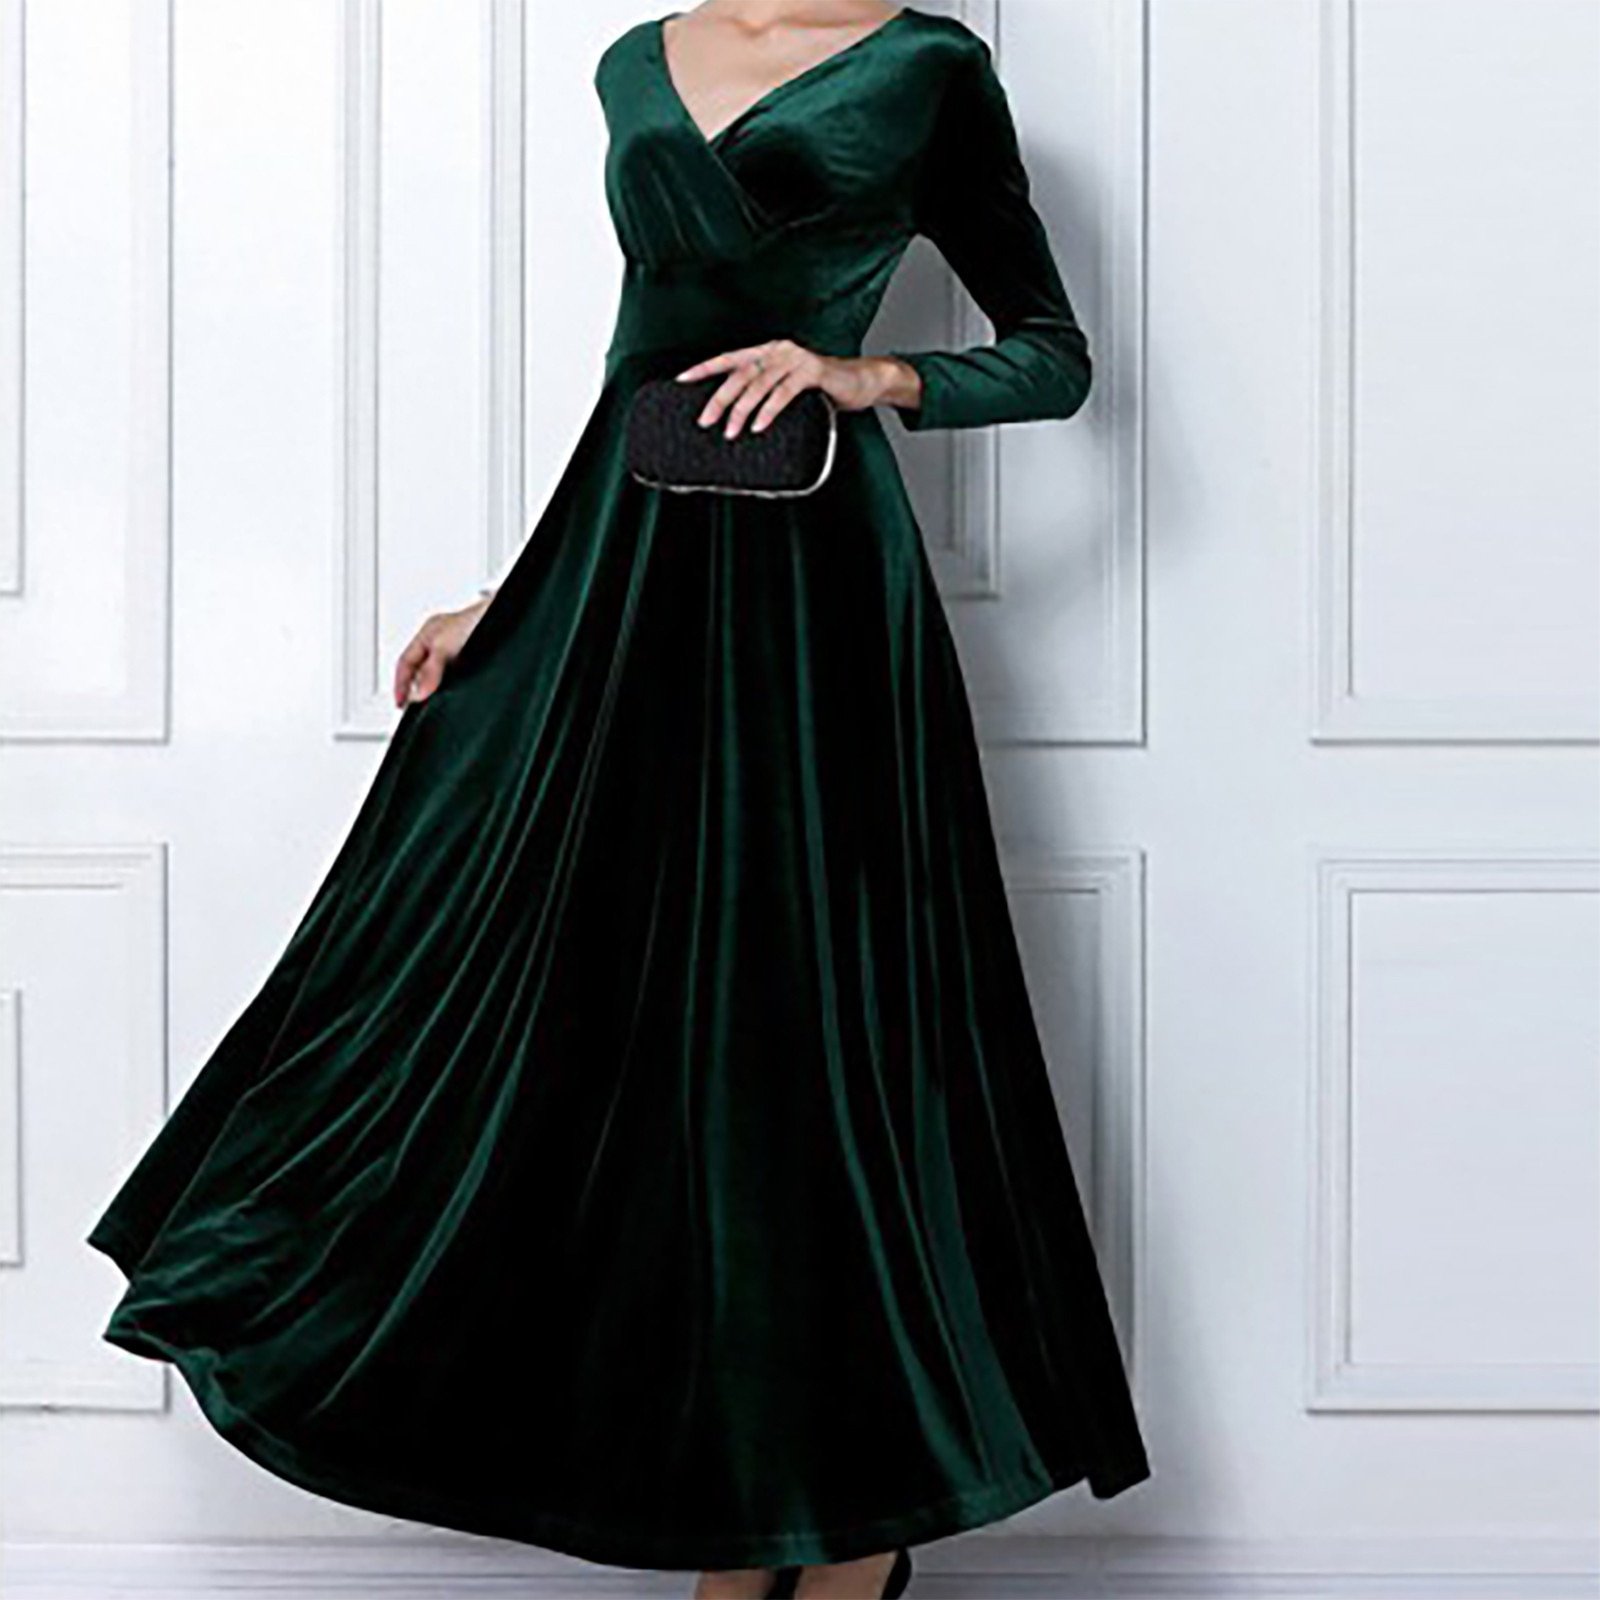 Длинное бархатное платье. Зеленое бархатное платье. Вечернее платье с рукавами бархатное. Вечернее бархатное зеленое платье.